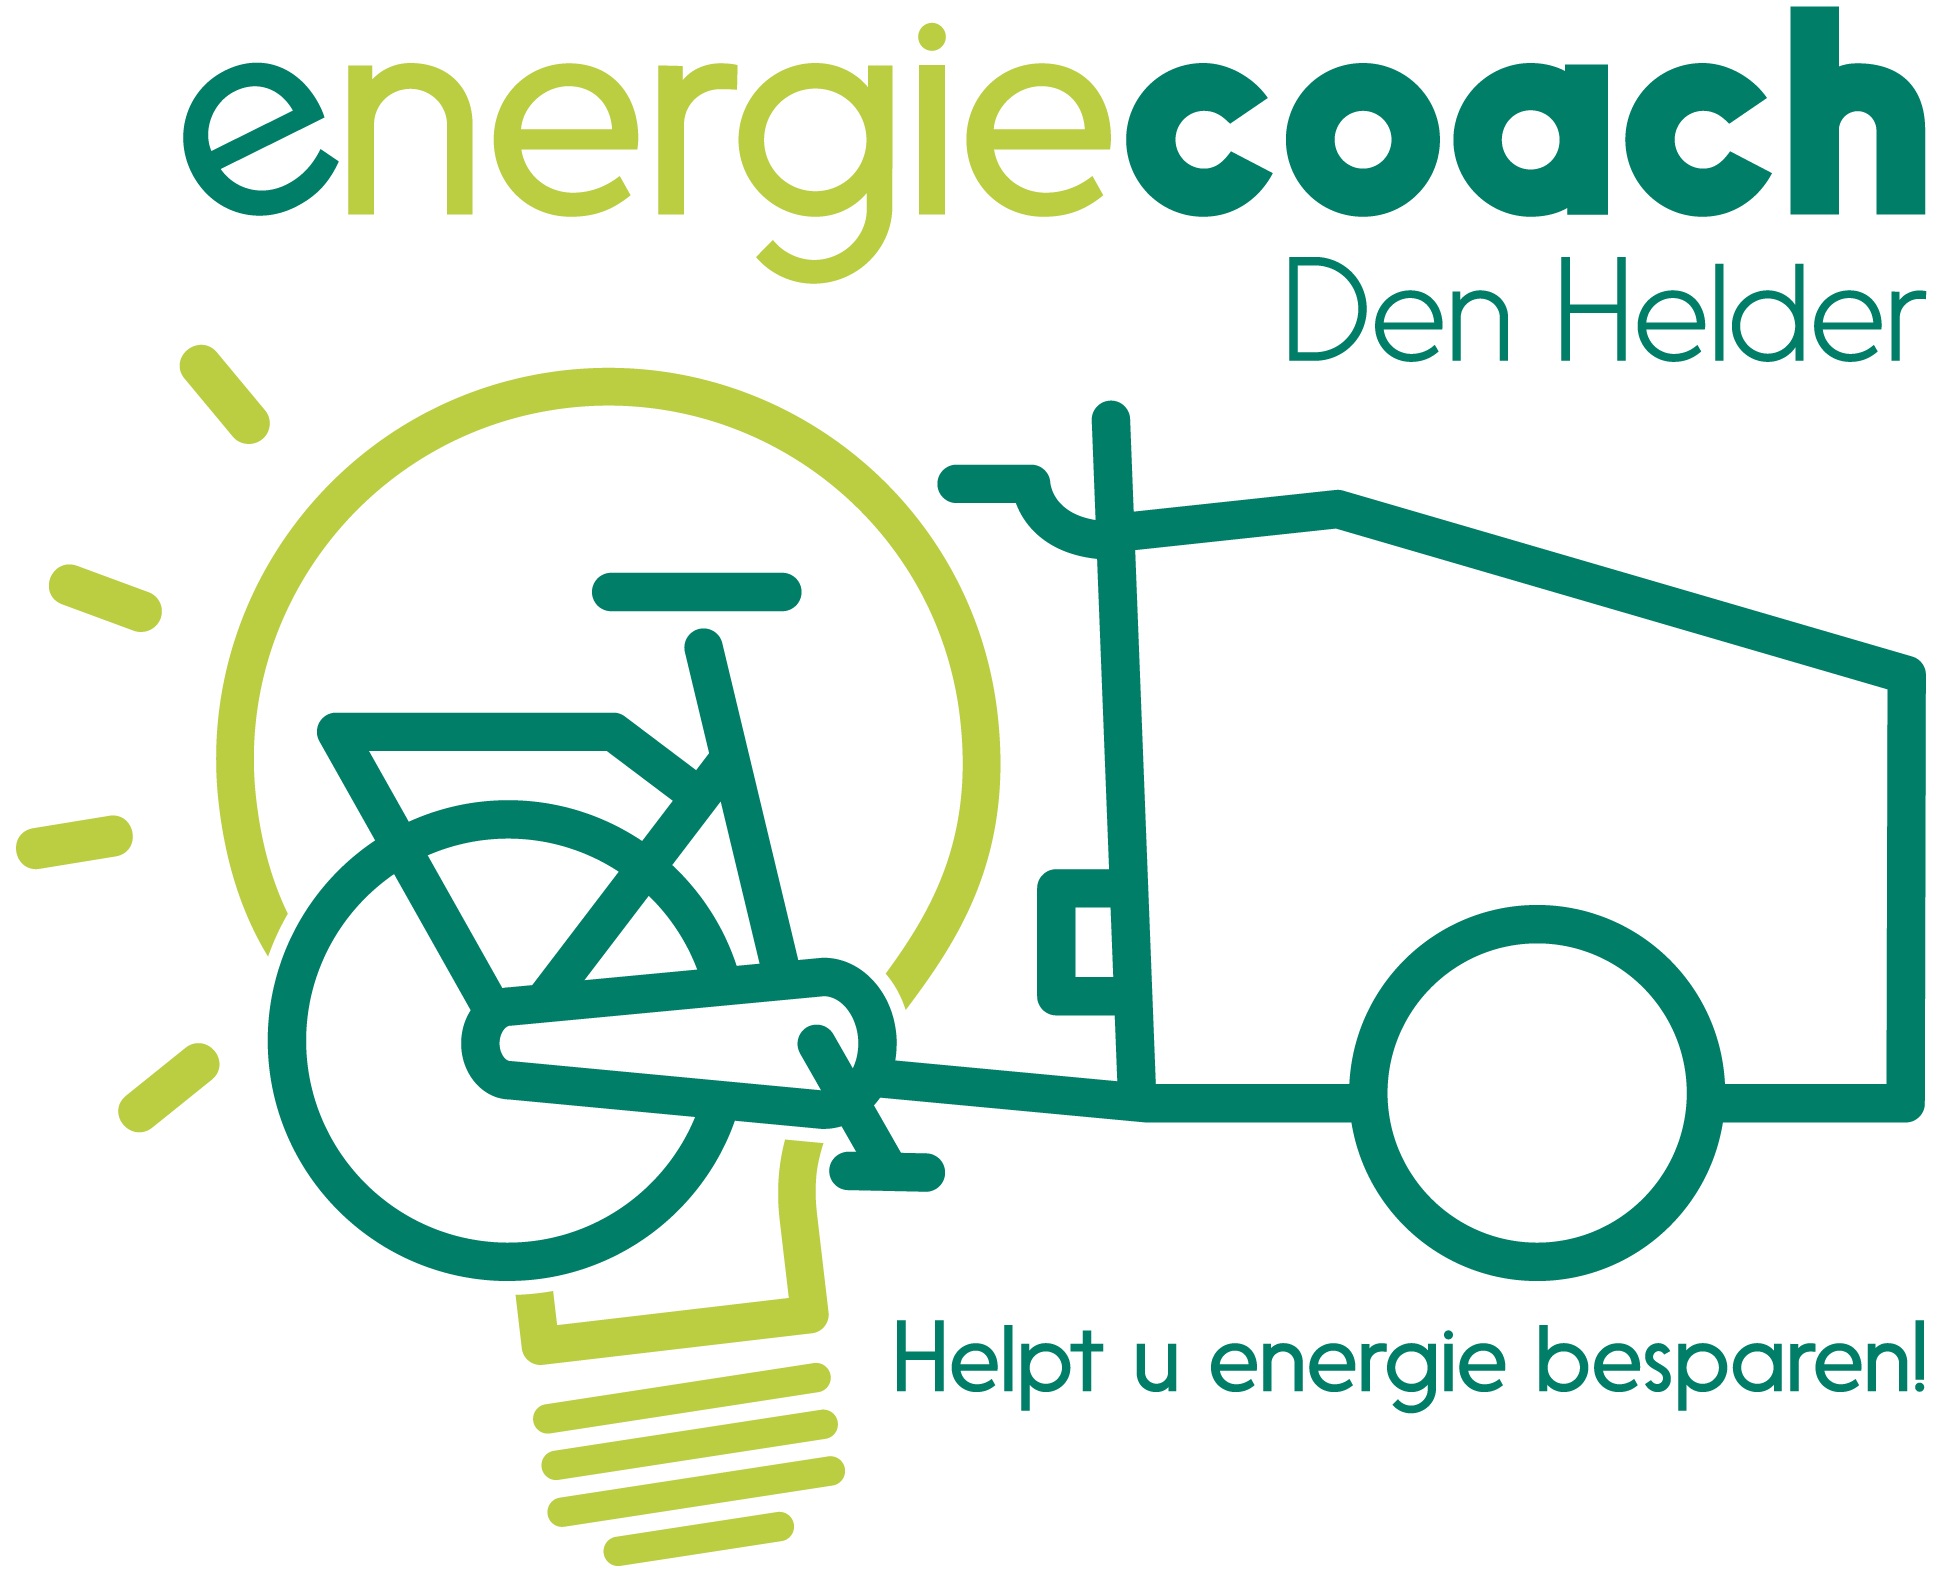 Logo met tekst: Energiecoach Den Helder Helpt u energie besparen!